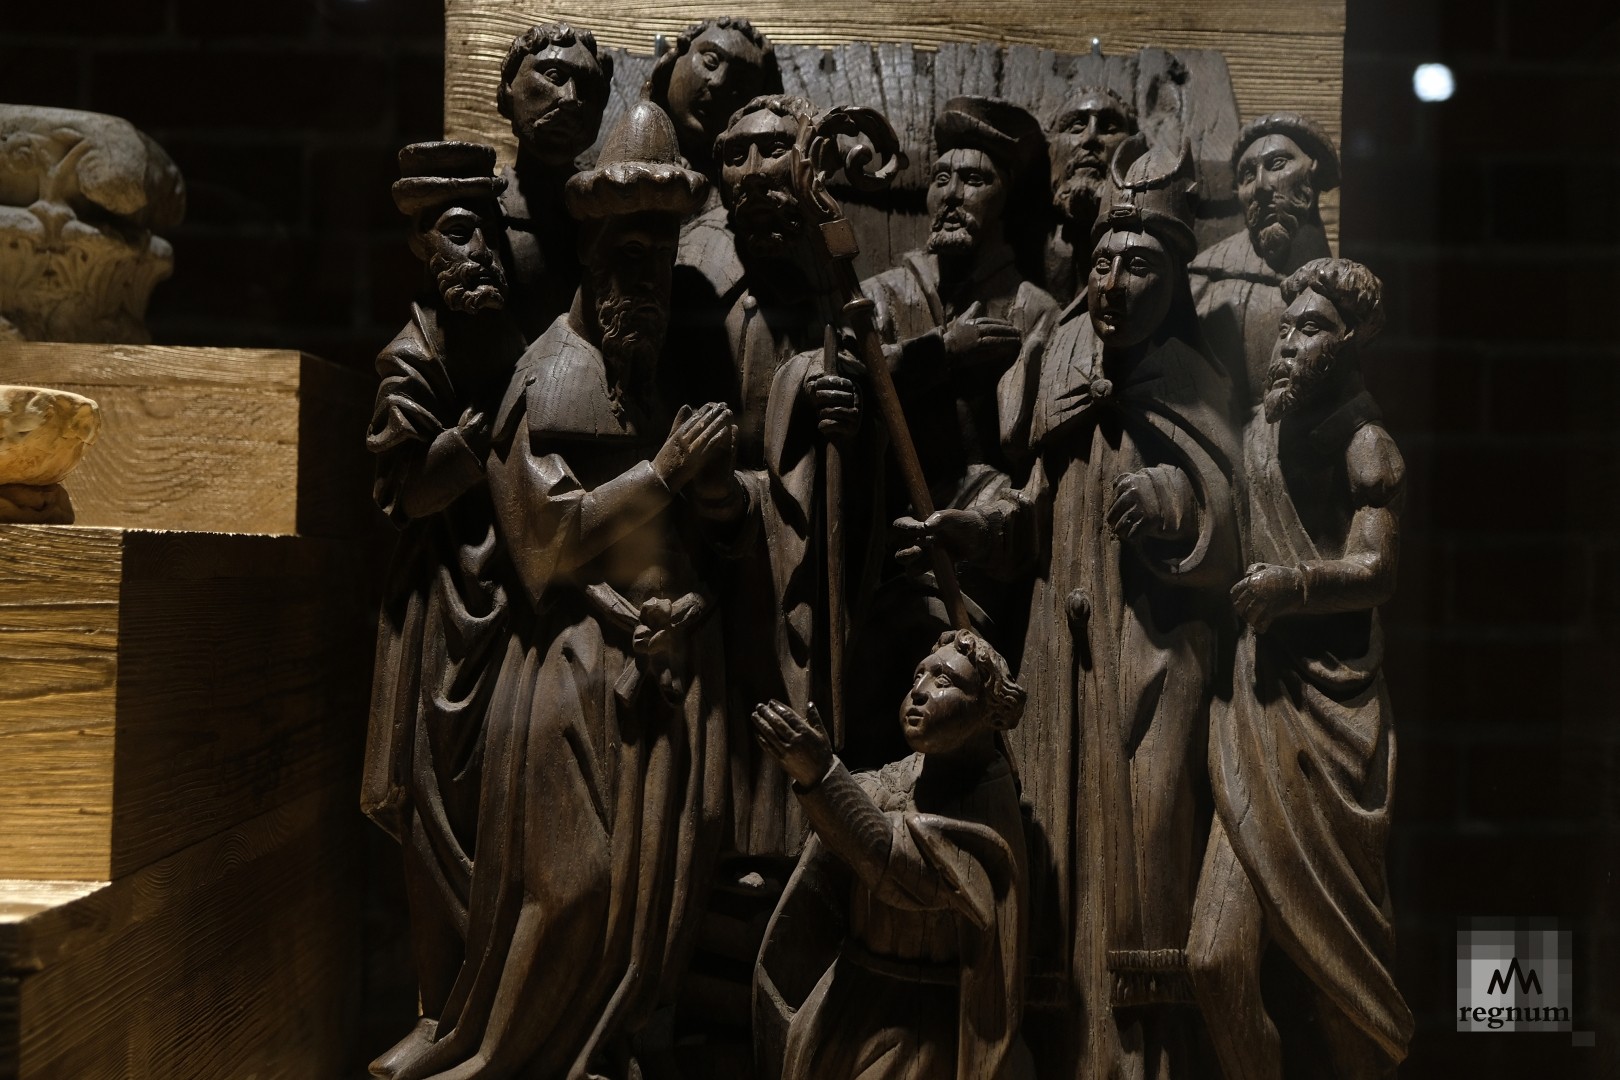 Сцена из жития Святого Генриха Сузо. Выставка «Названо Вазари. Готика». Нижегородский музей современного искусства «Арсенал» 